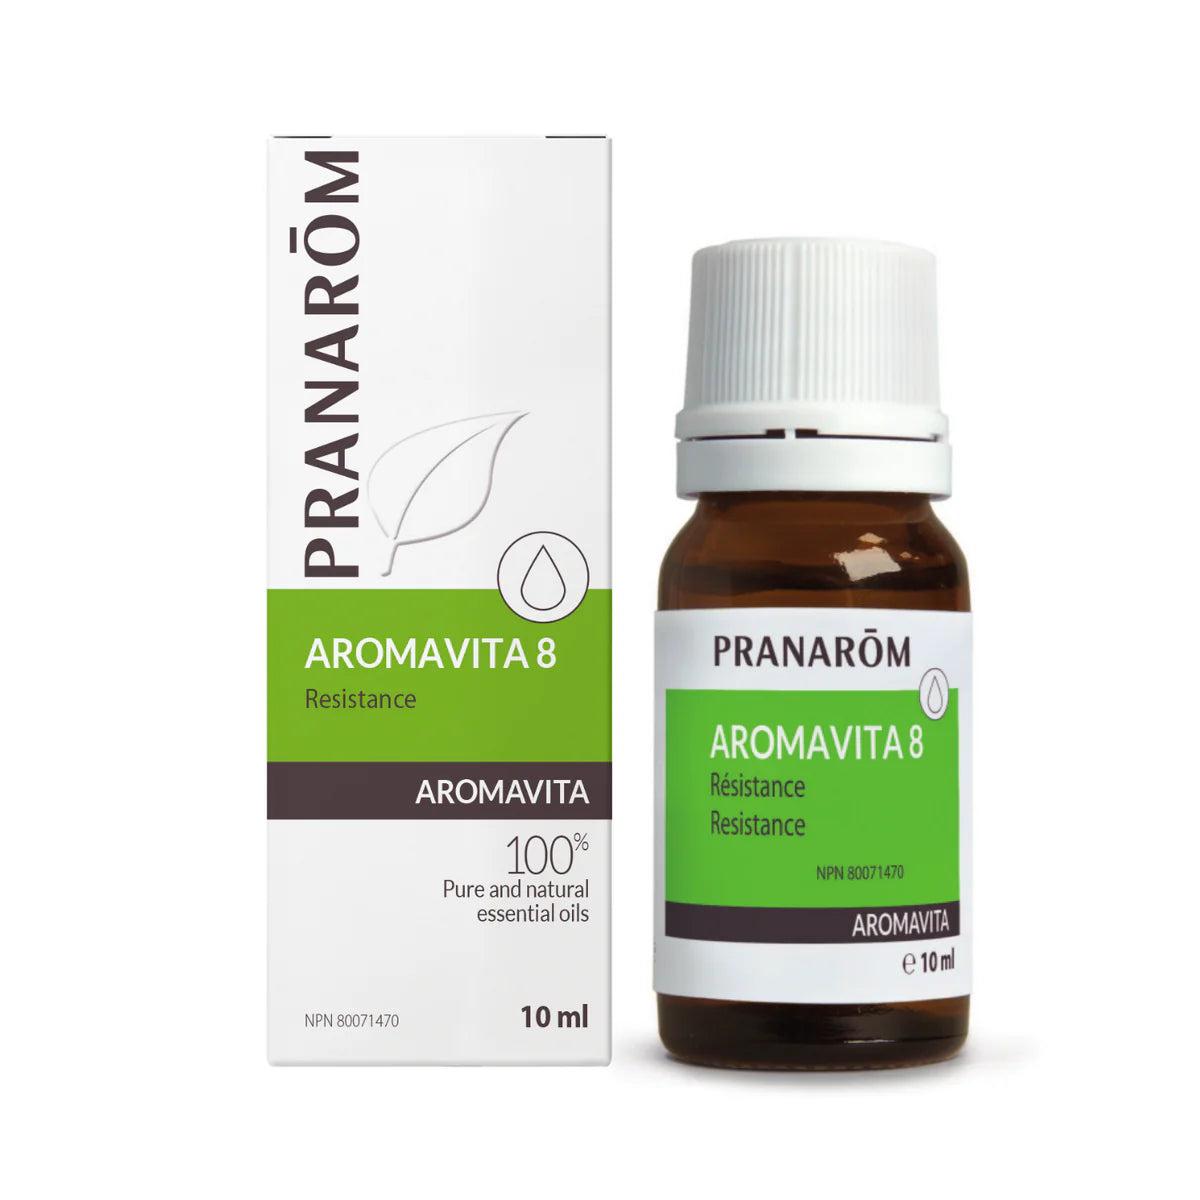 Aromavita 8 Resistance Formula. 10 ml, Pranarom